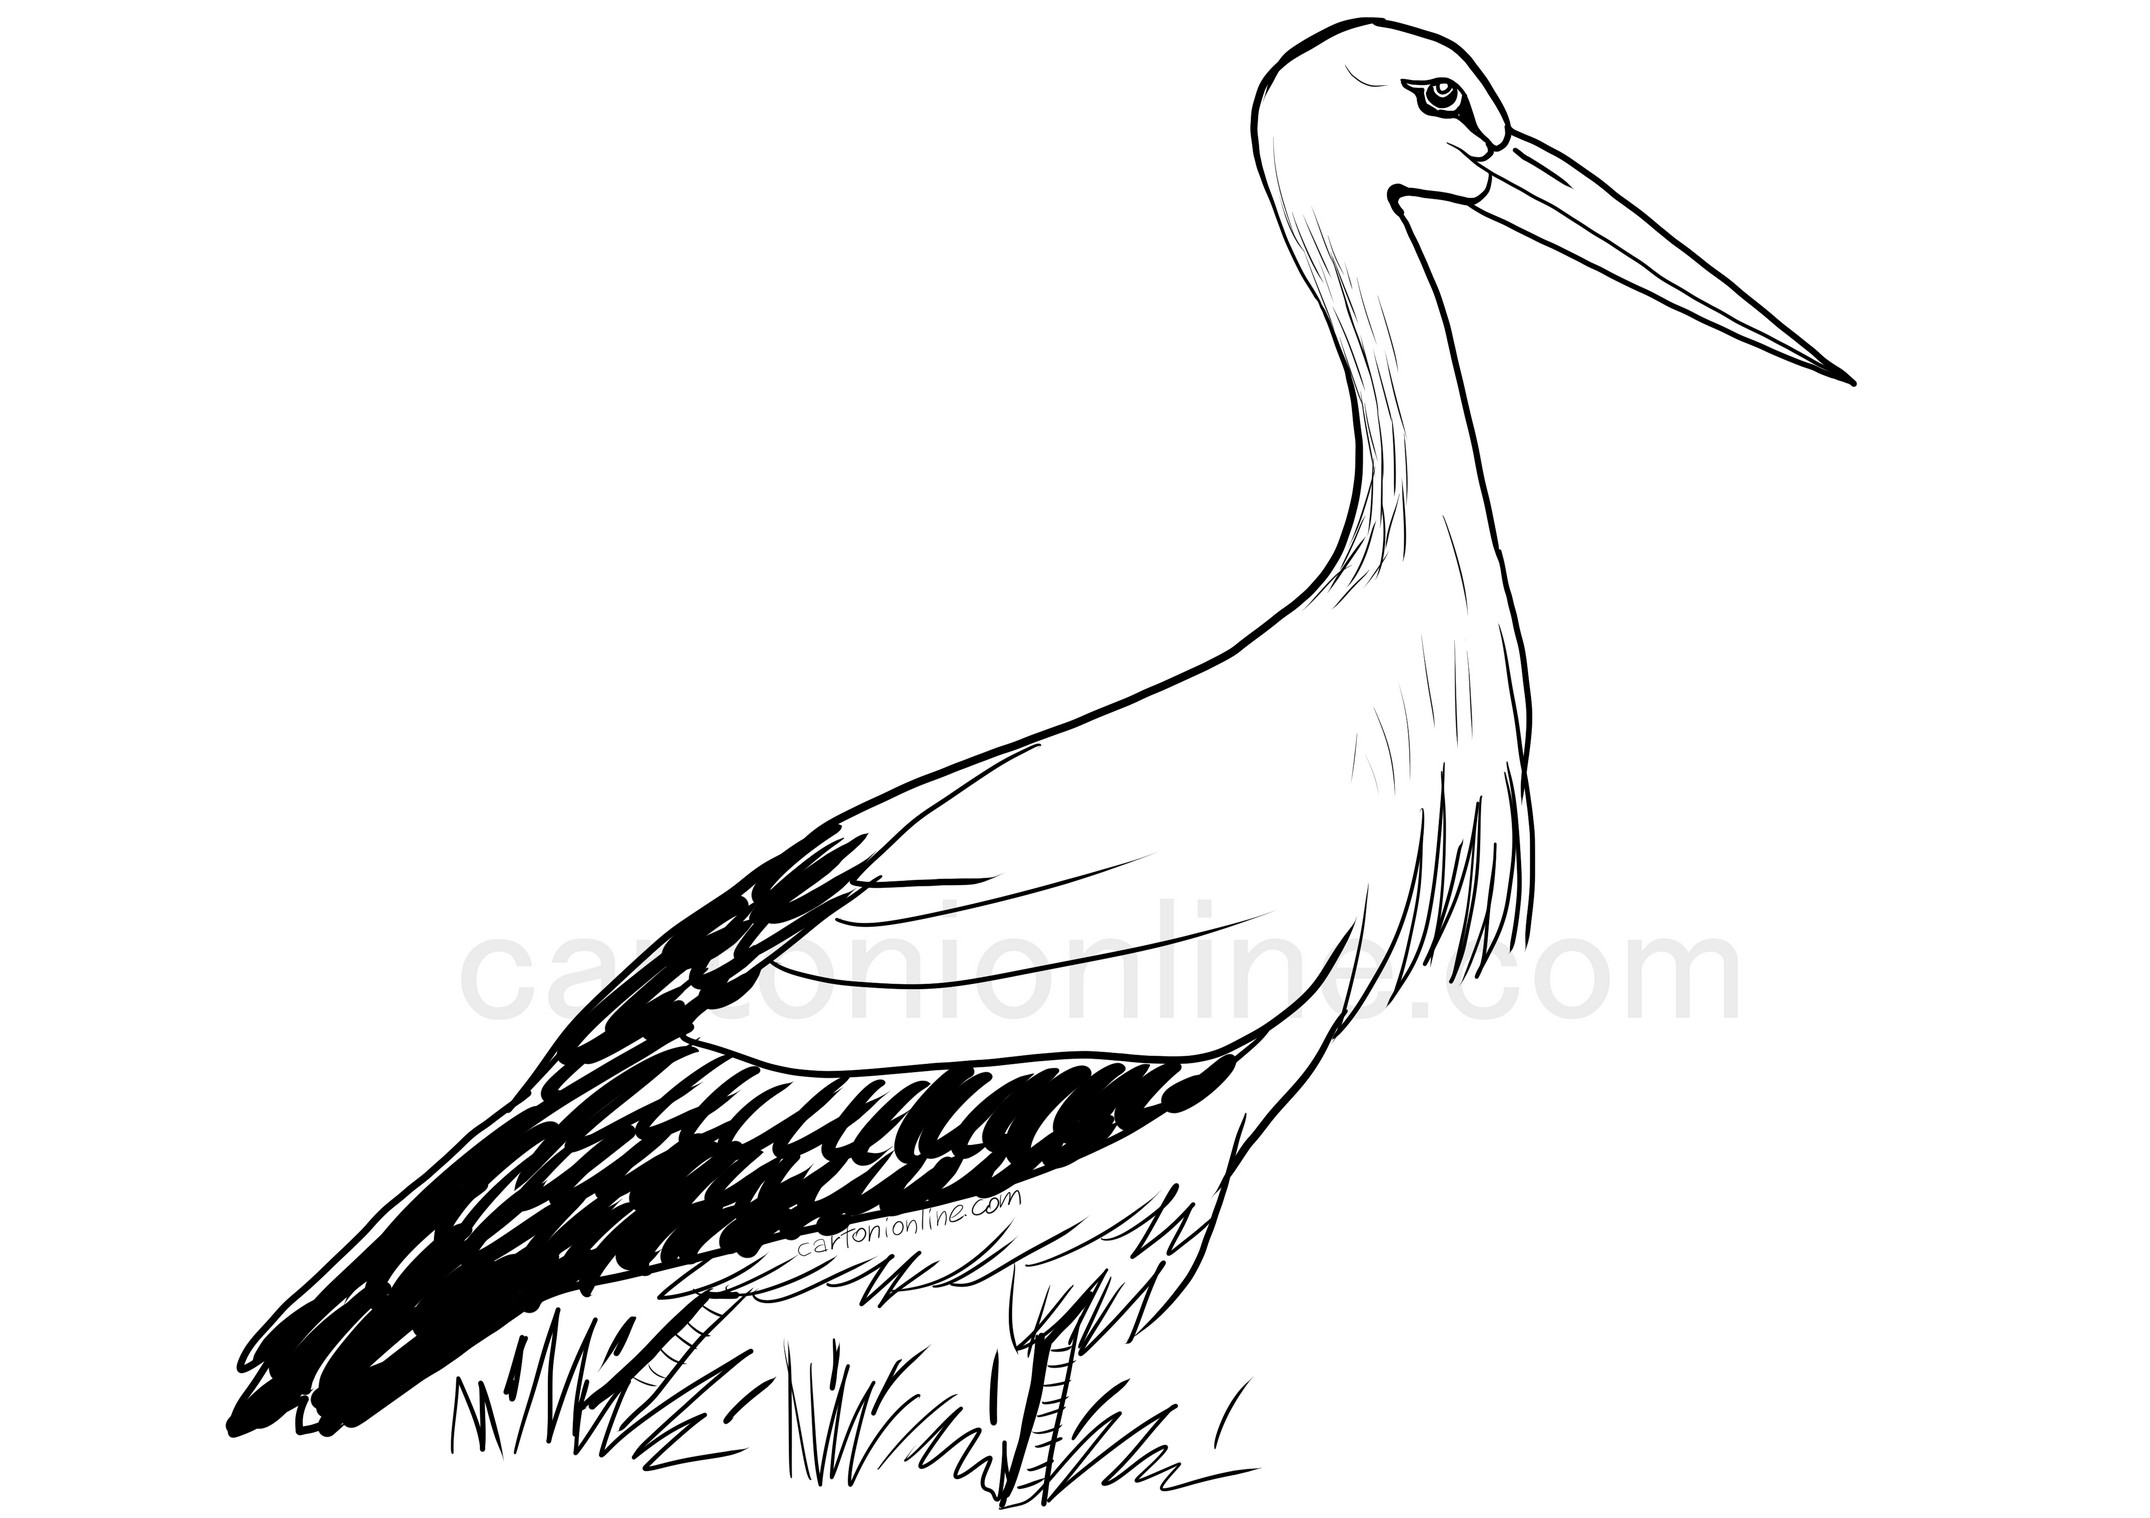 White stork sketch I. by PerjamosyArt on DeviantArt